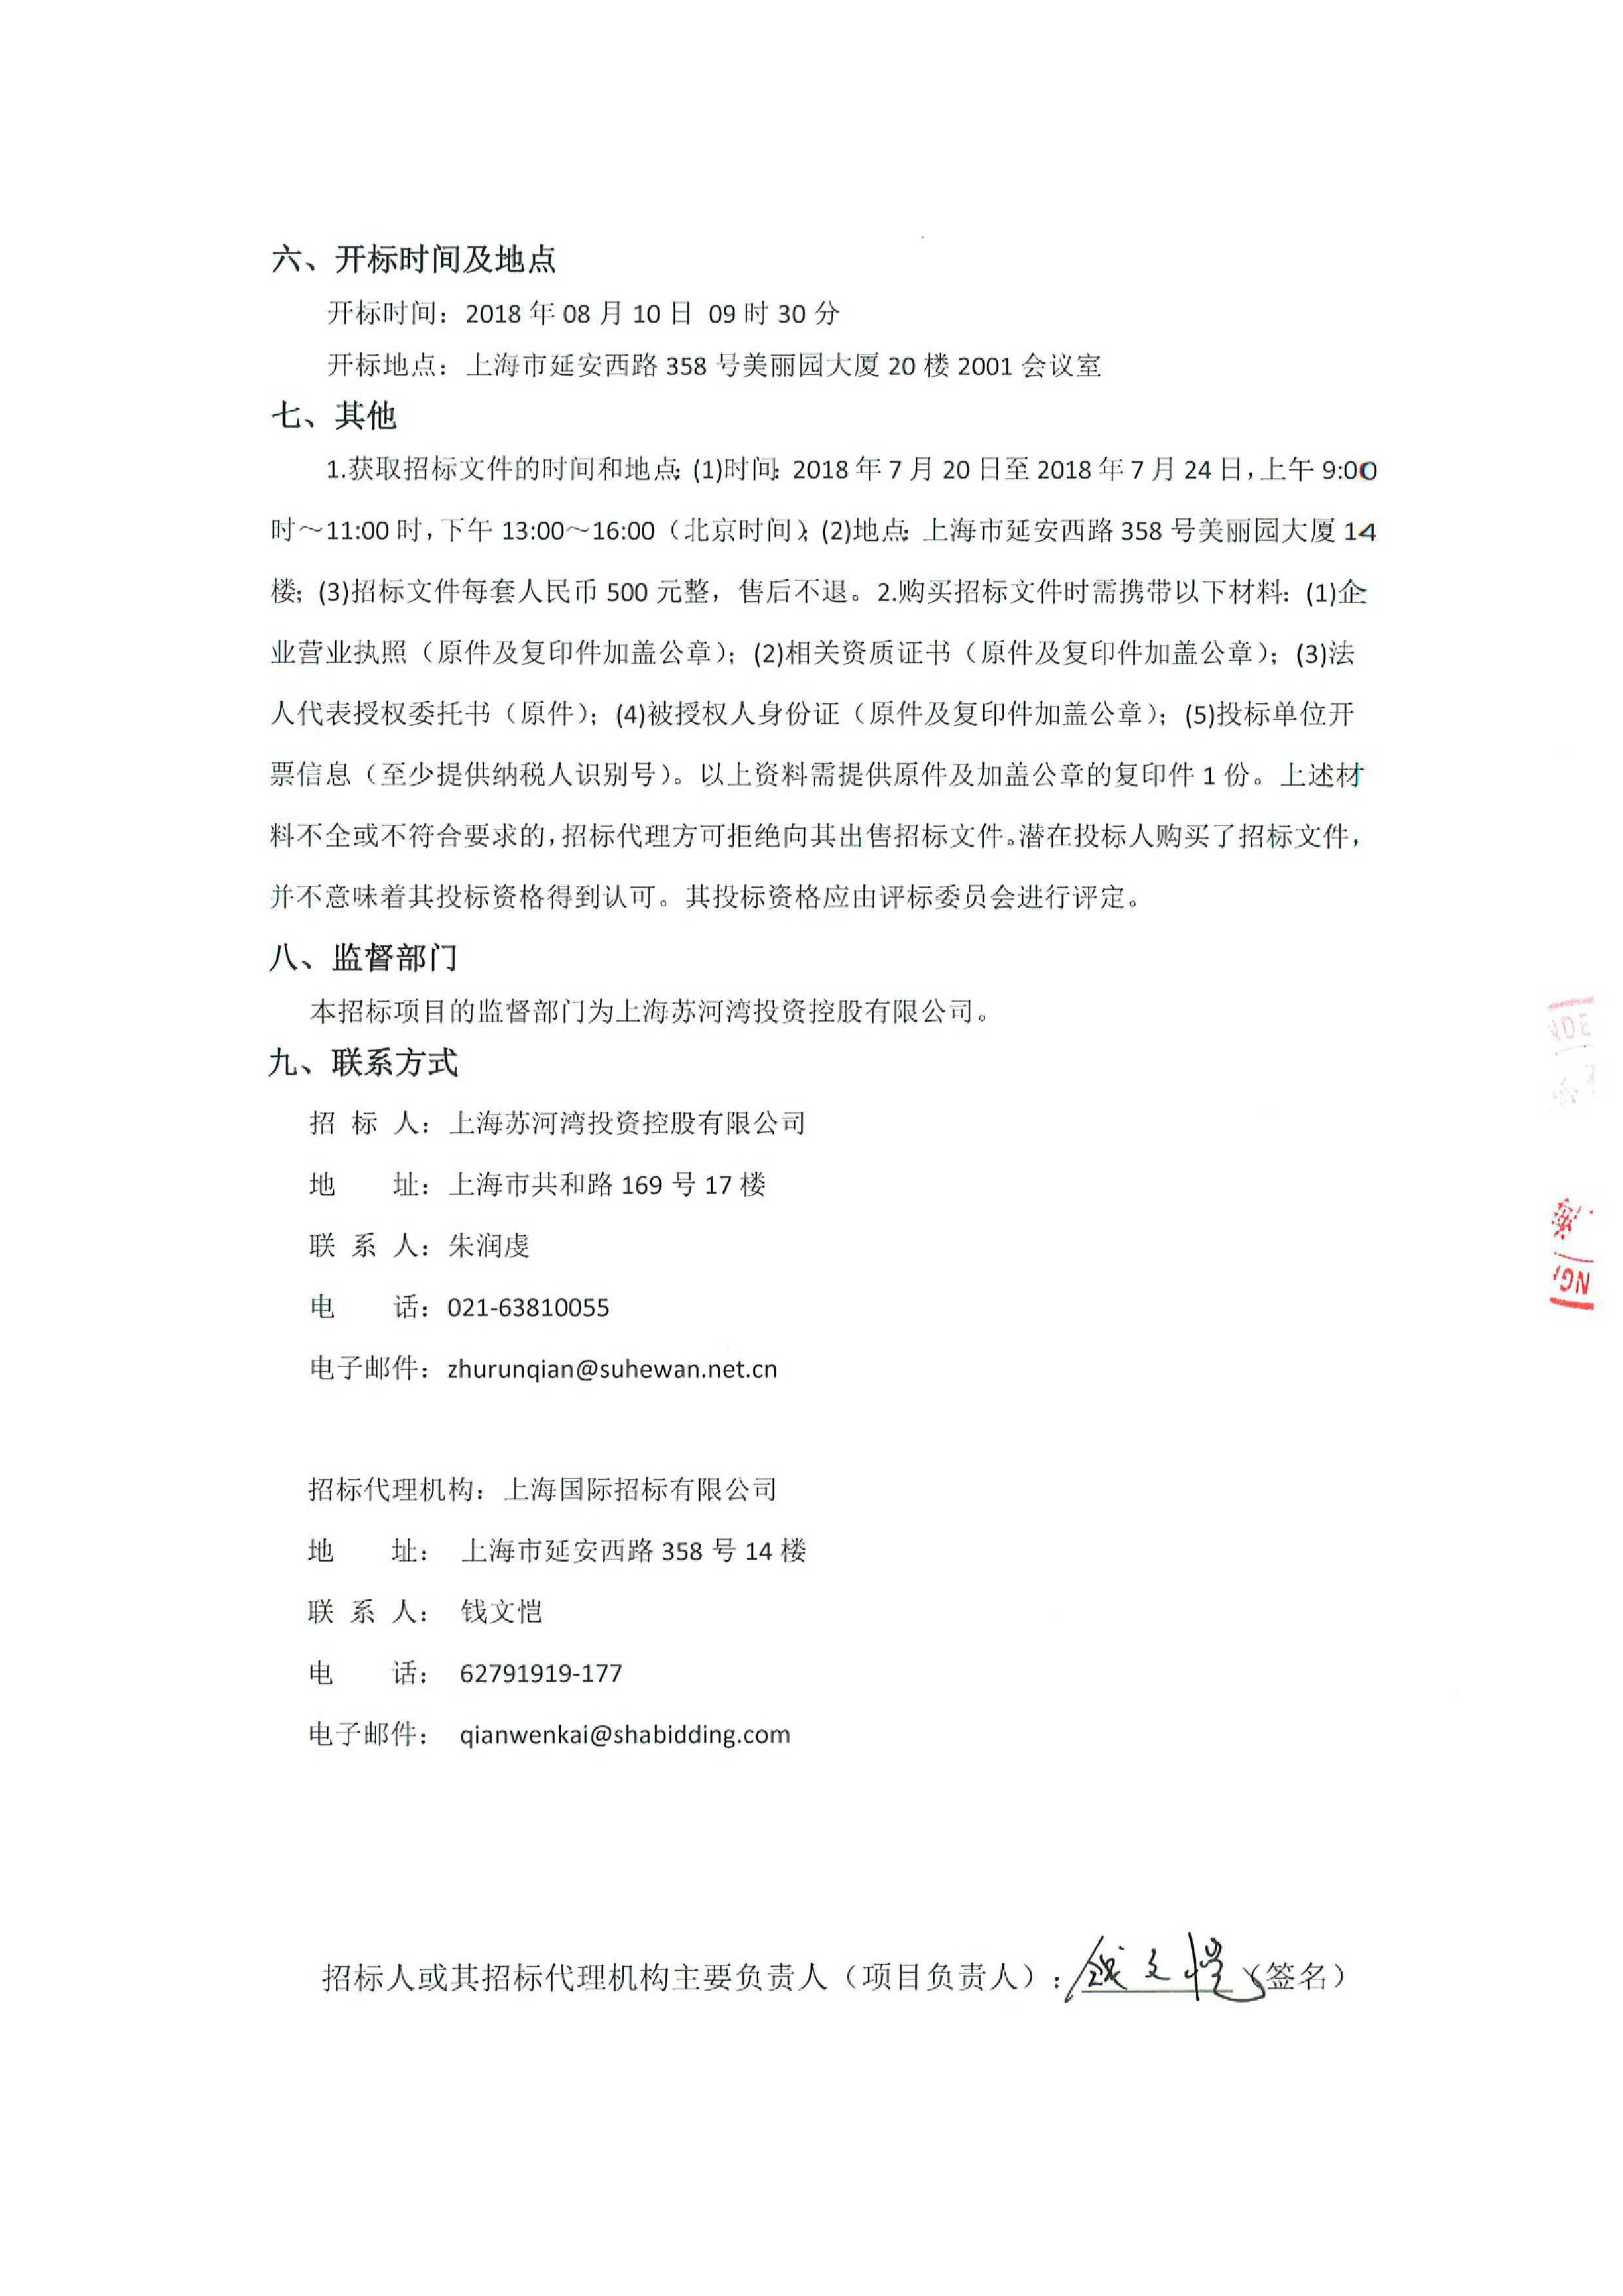 上海国际招标有限公司关于普善路-万荣路-三泉